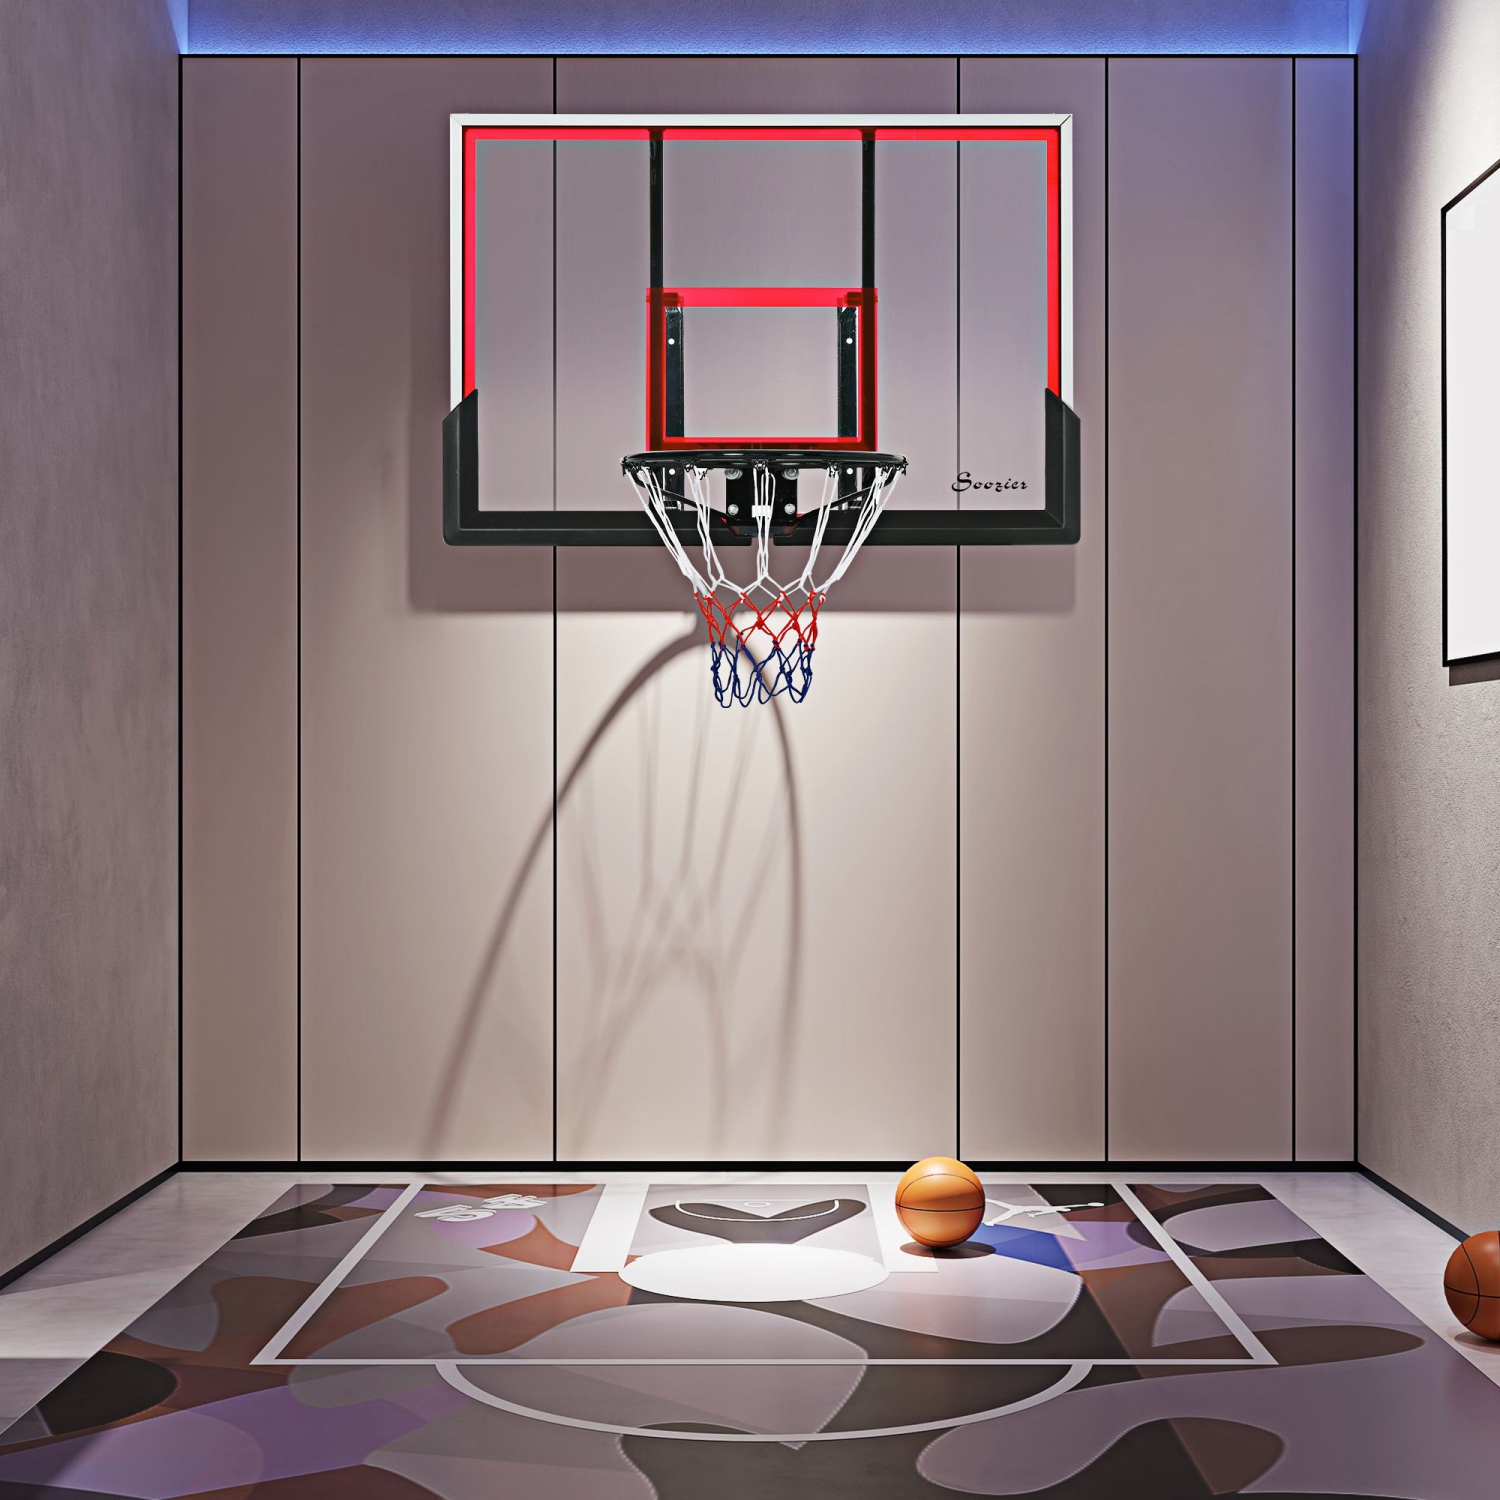 Panier de basket-ball mural de 43 po pour intérieur/extérieur par Soozier  A61-030